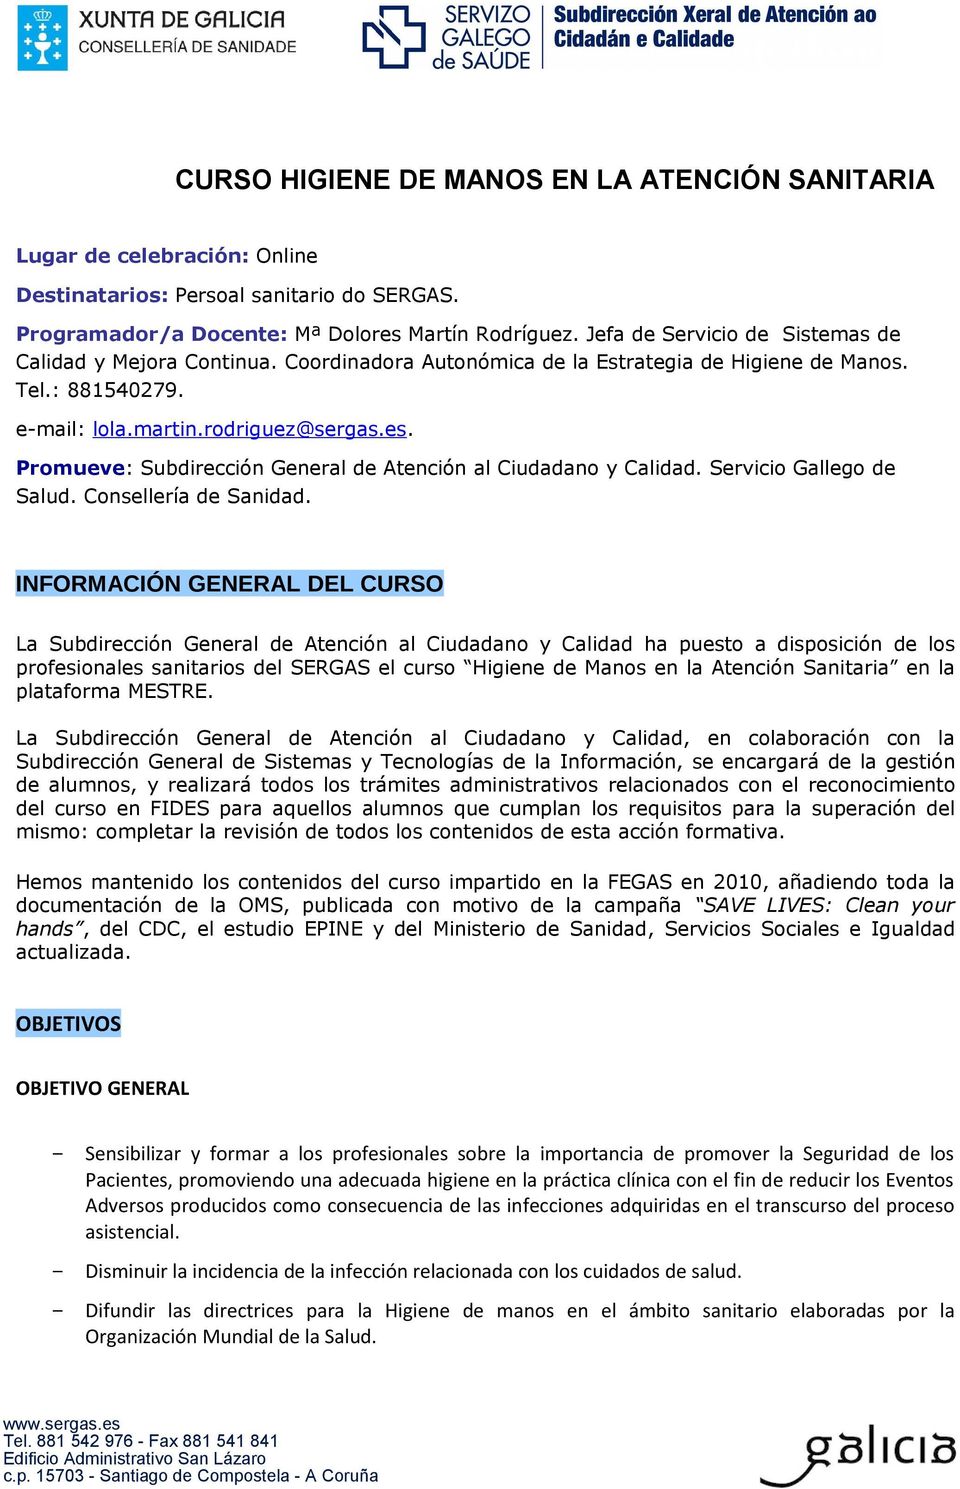 Promueve: Subdirección General de Atención al Ciudadano y Calidad. Servicio Gallego de Salud. Consellería de Sanidad.